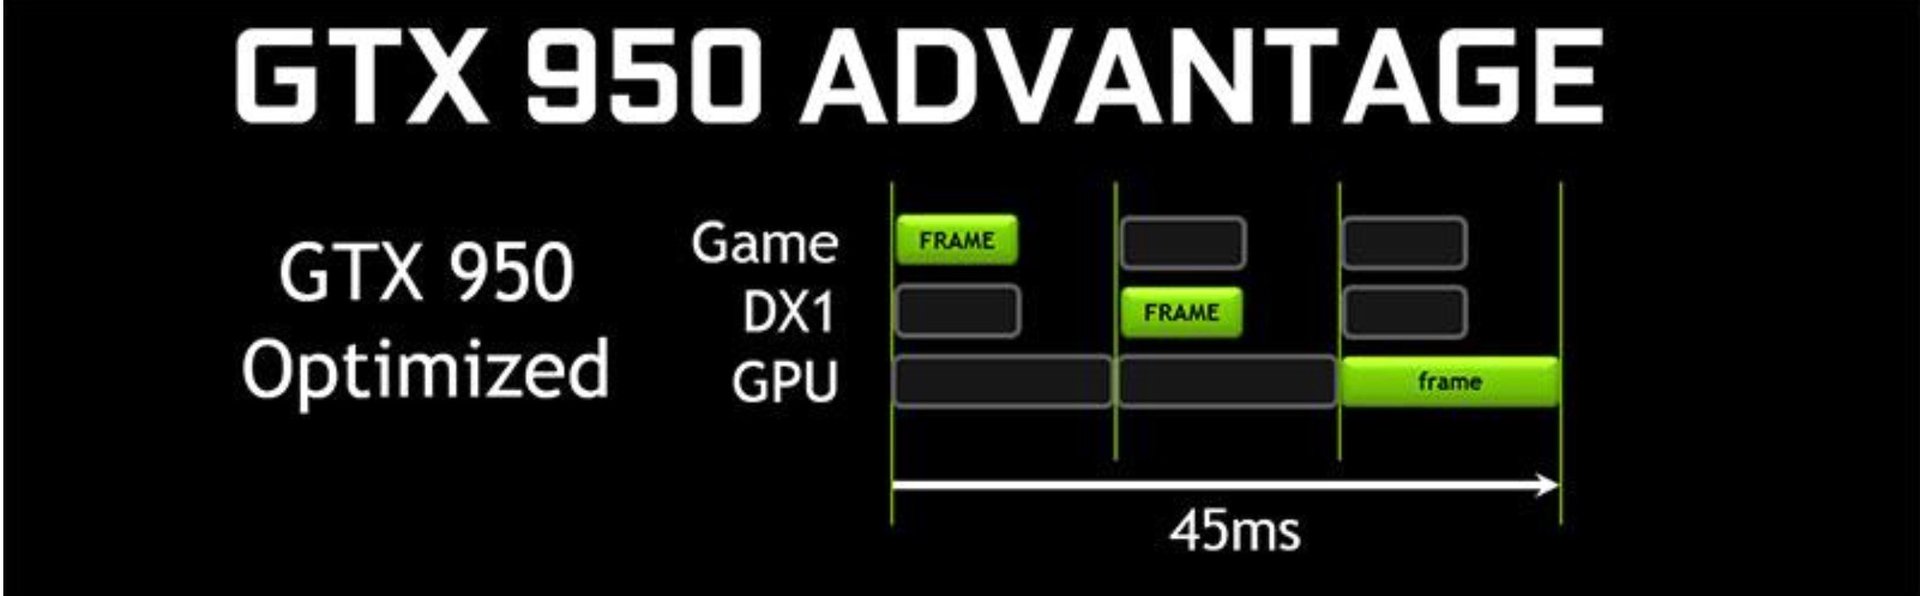 GeForce GTX 950 mit optimierten Einstellungen